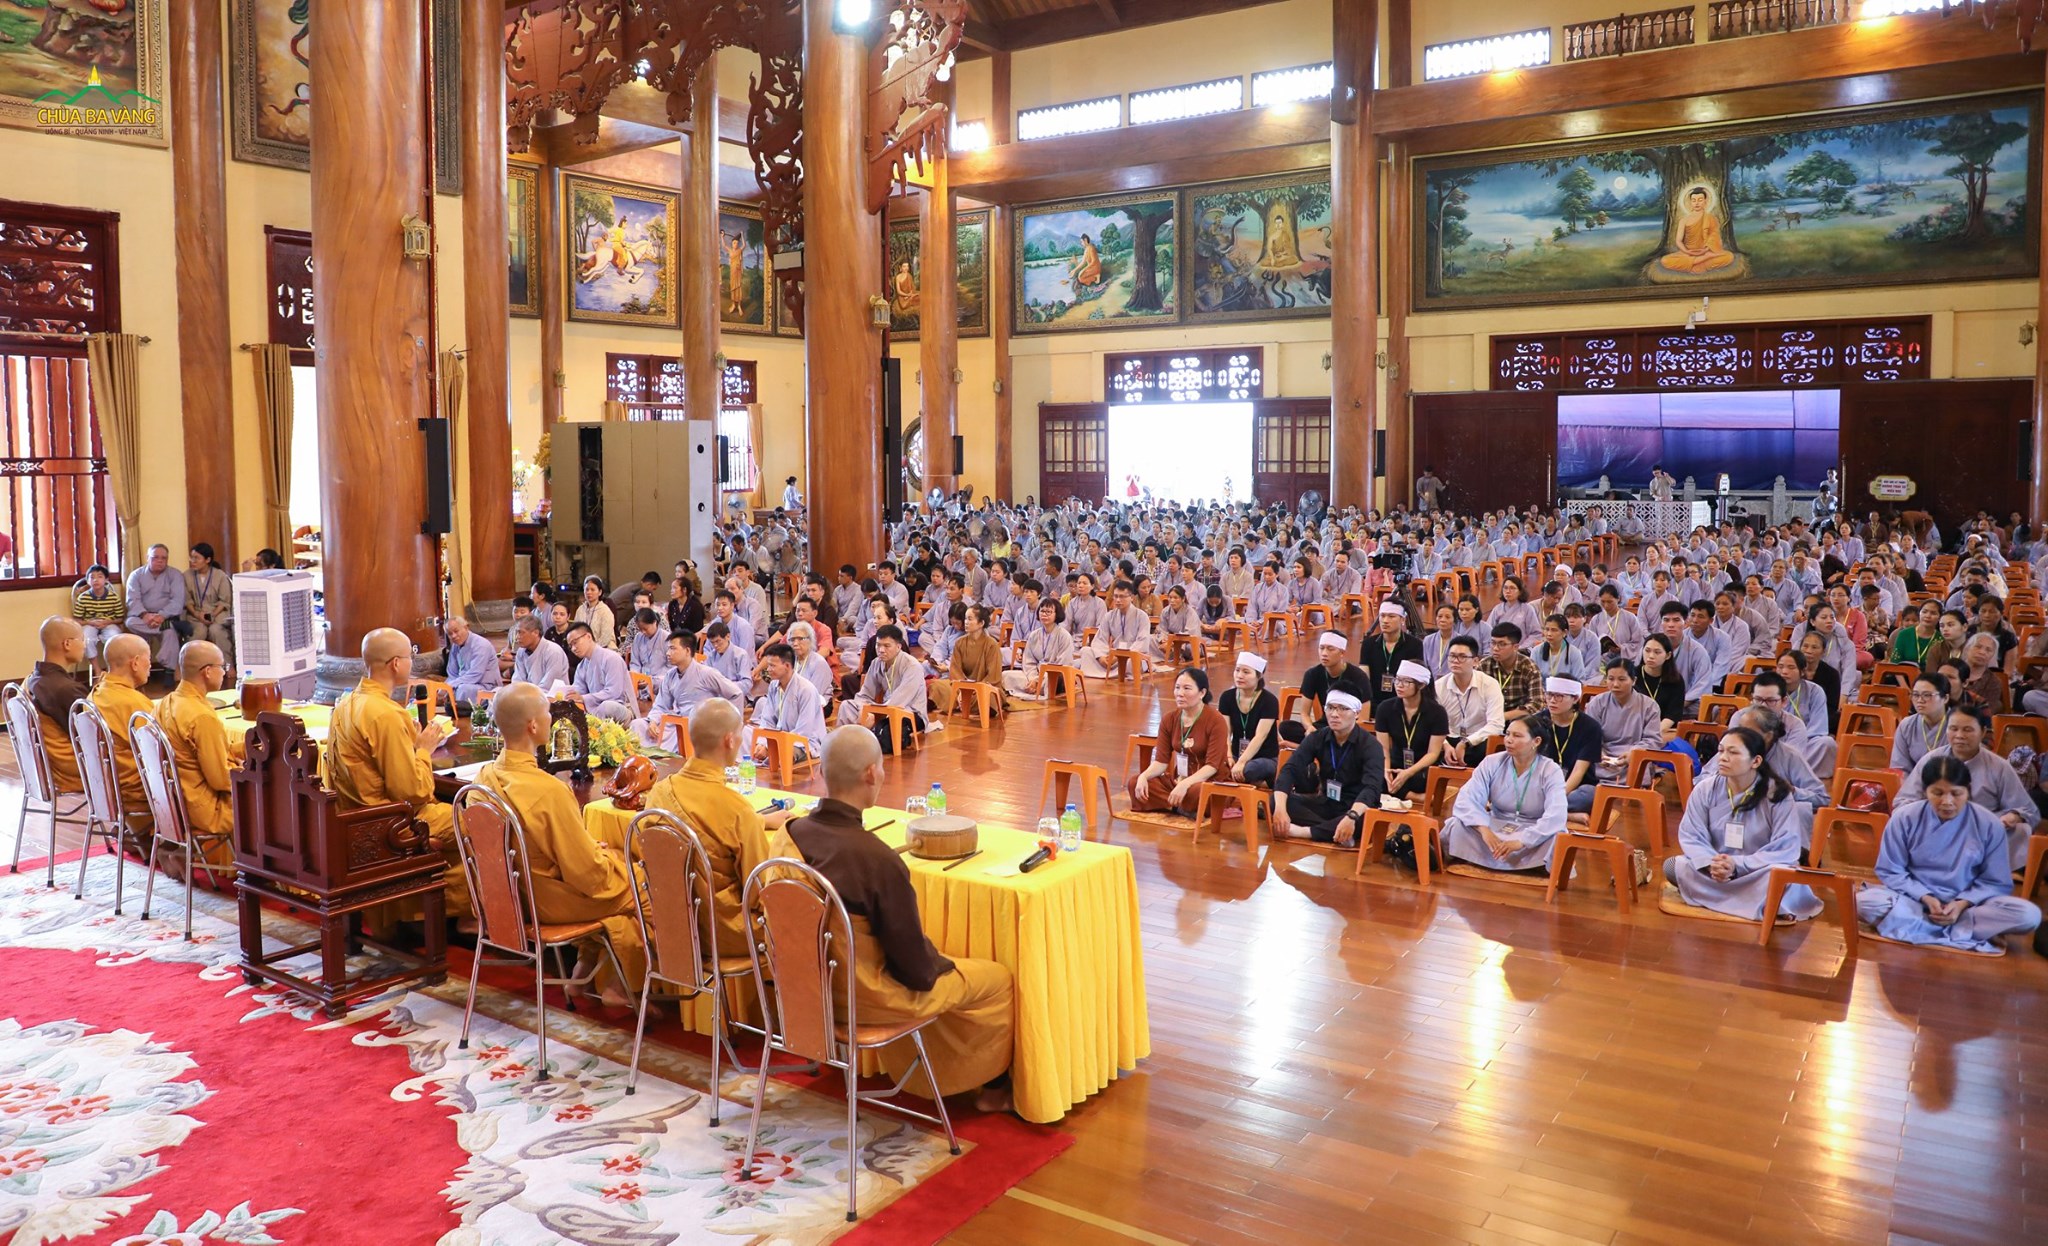 Toàn cảnh buổi lễ cầu siêu trực tiếp tại chùa Ba Vàng (ảnh tháng 7 năm 2020)